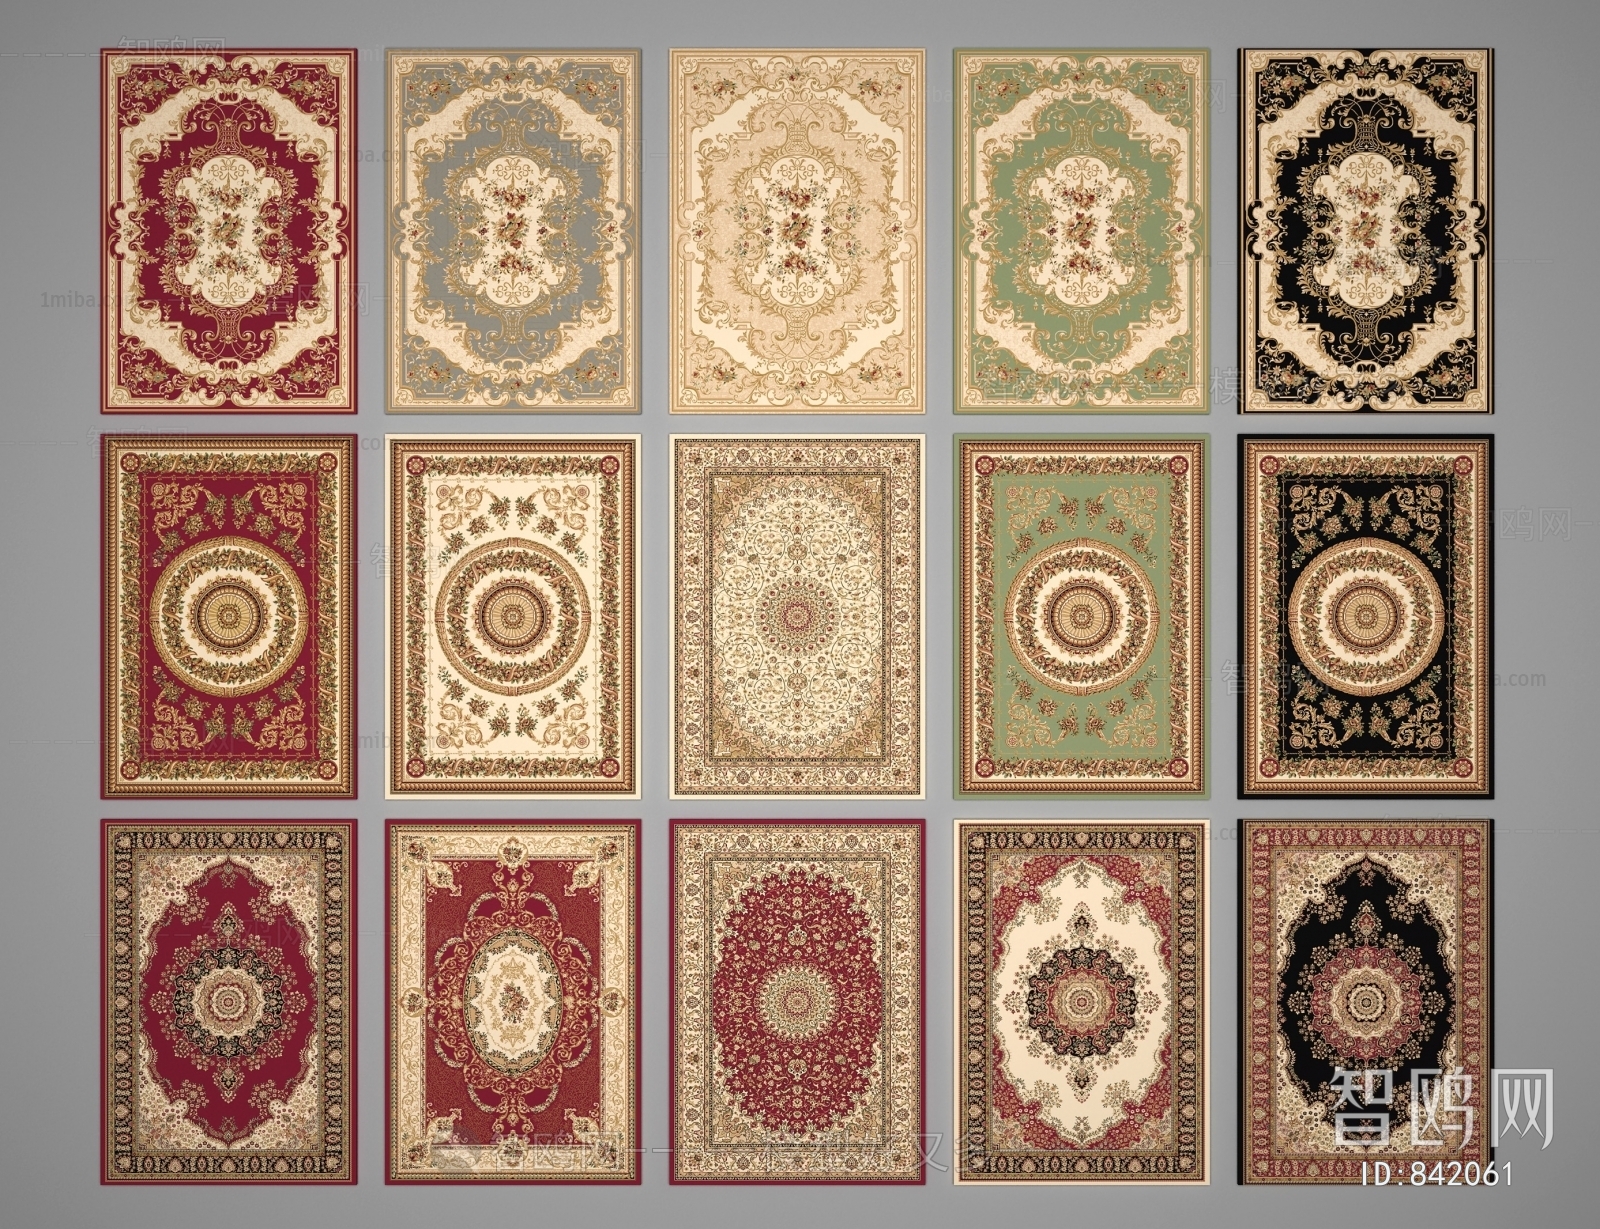 European Style The Carpet